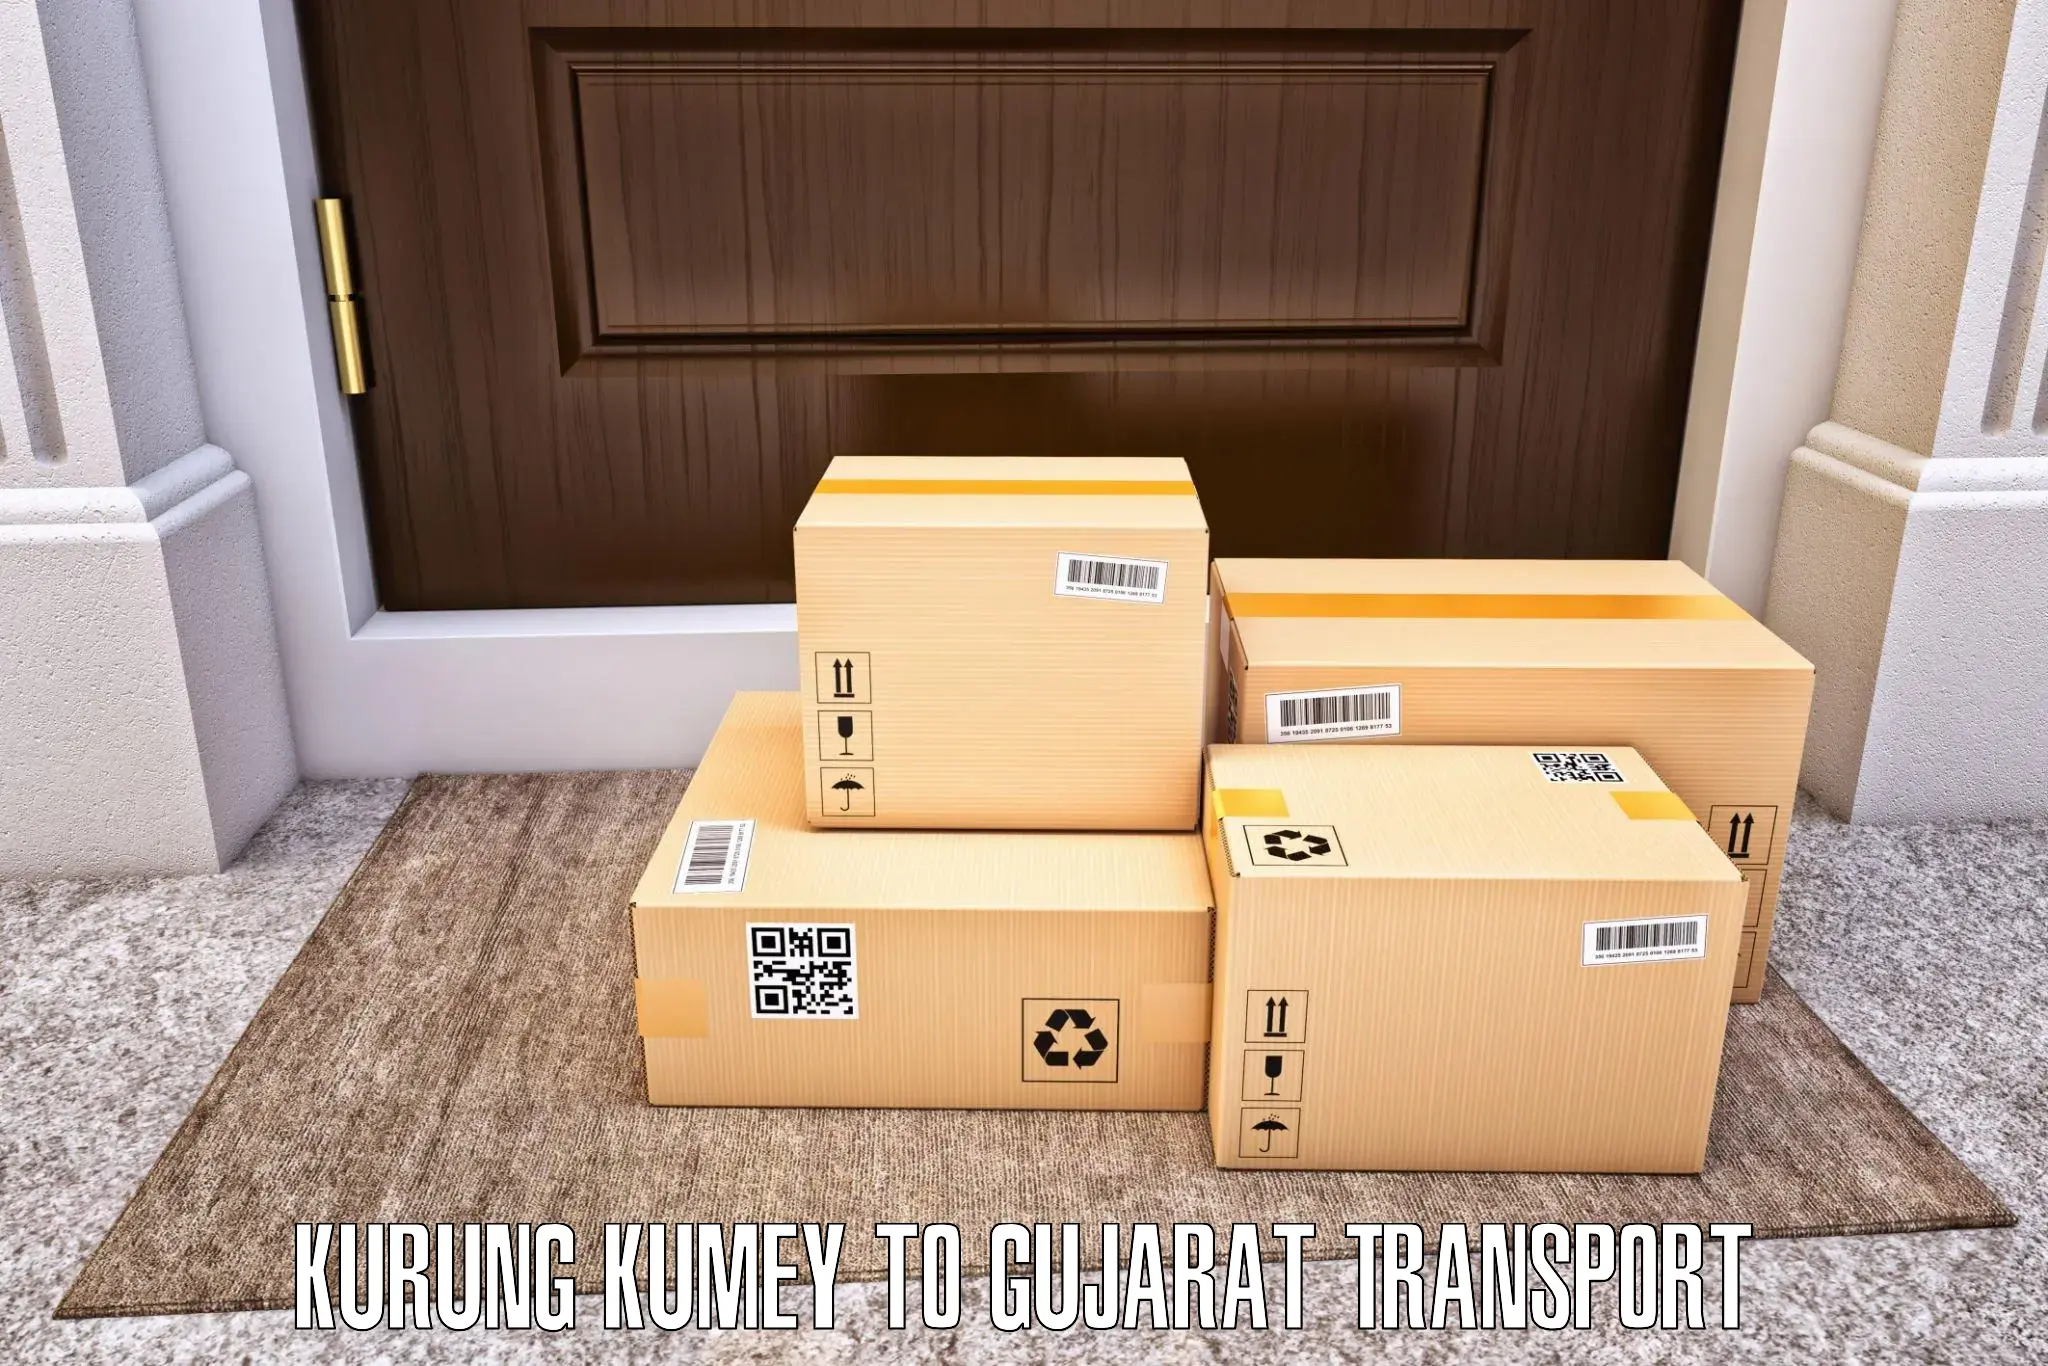 Luggage transport services Kurung Kumey to Ahmedabad